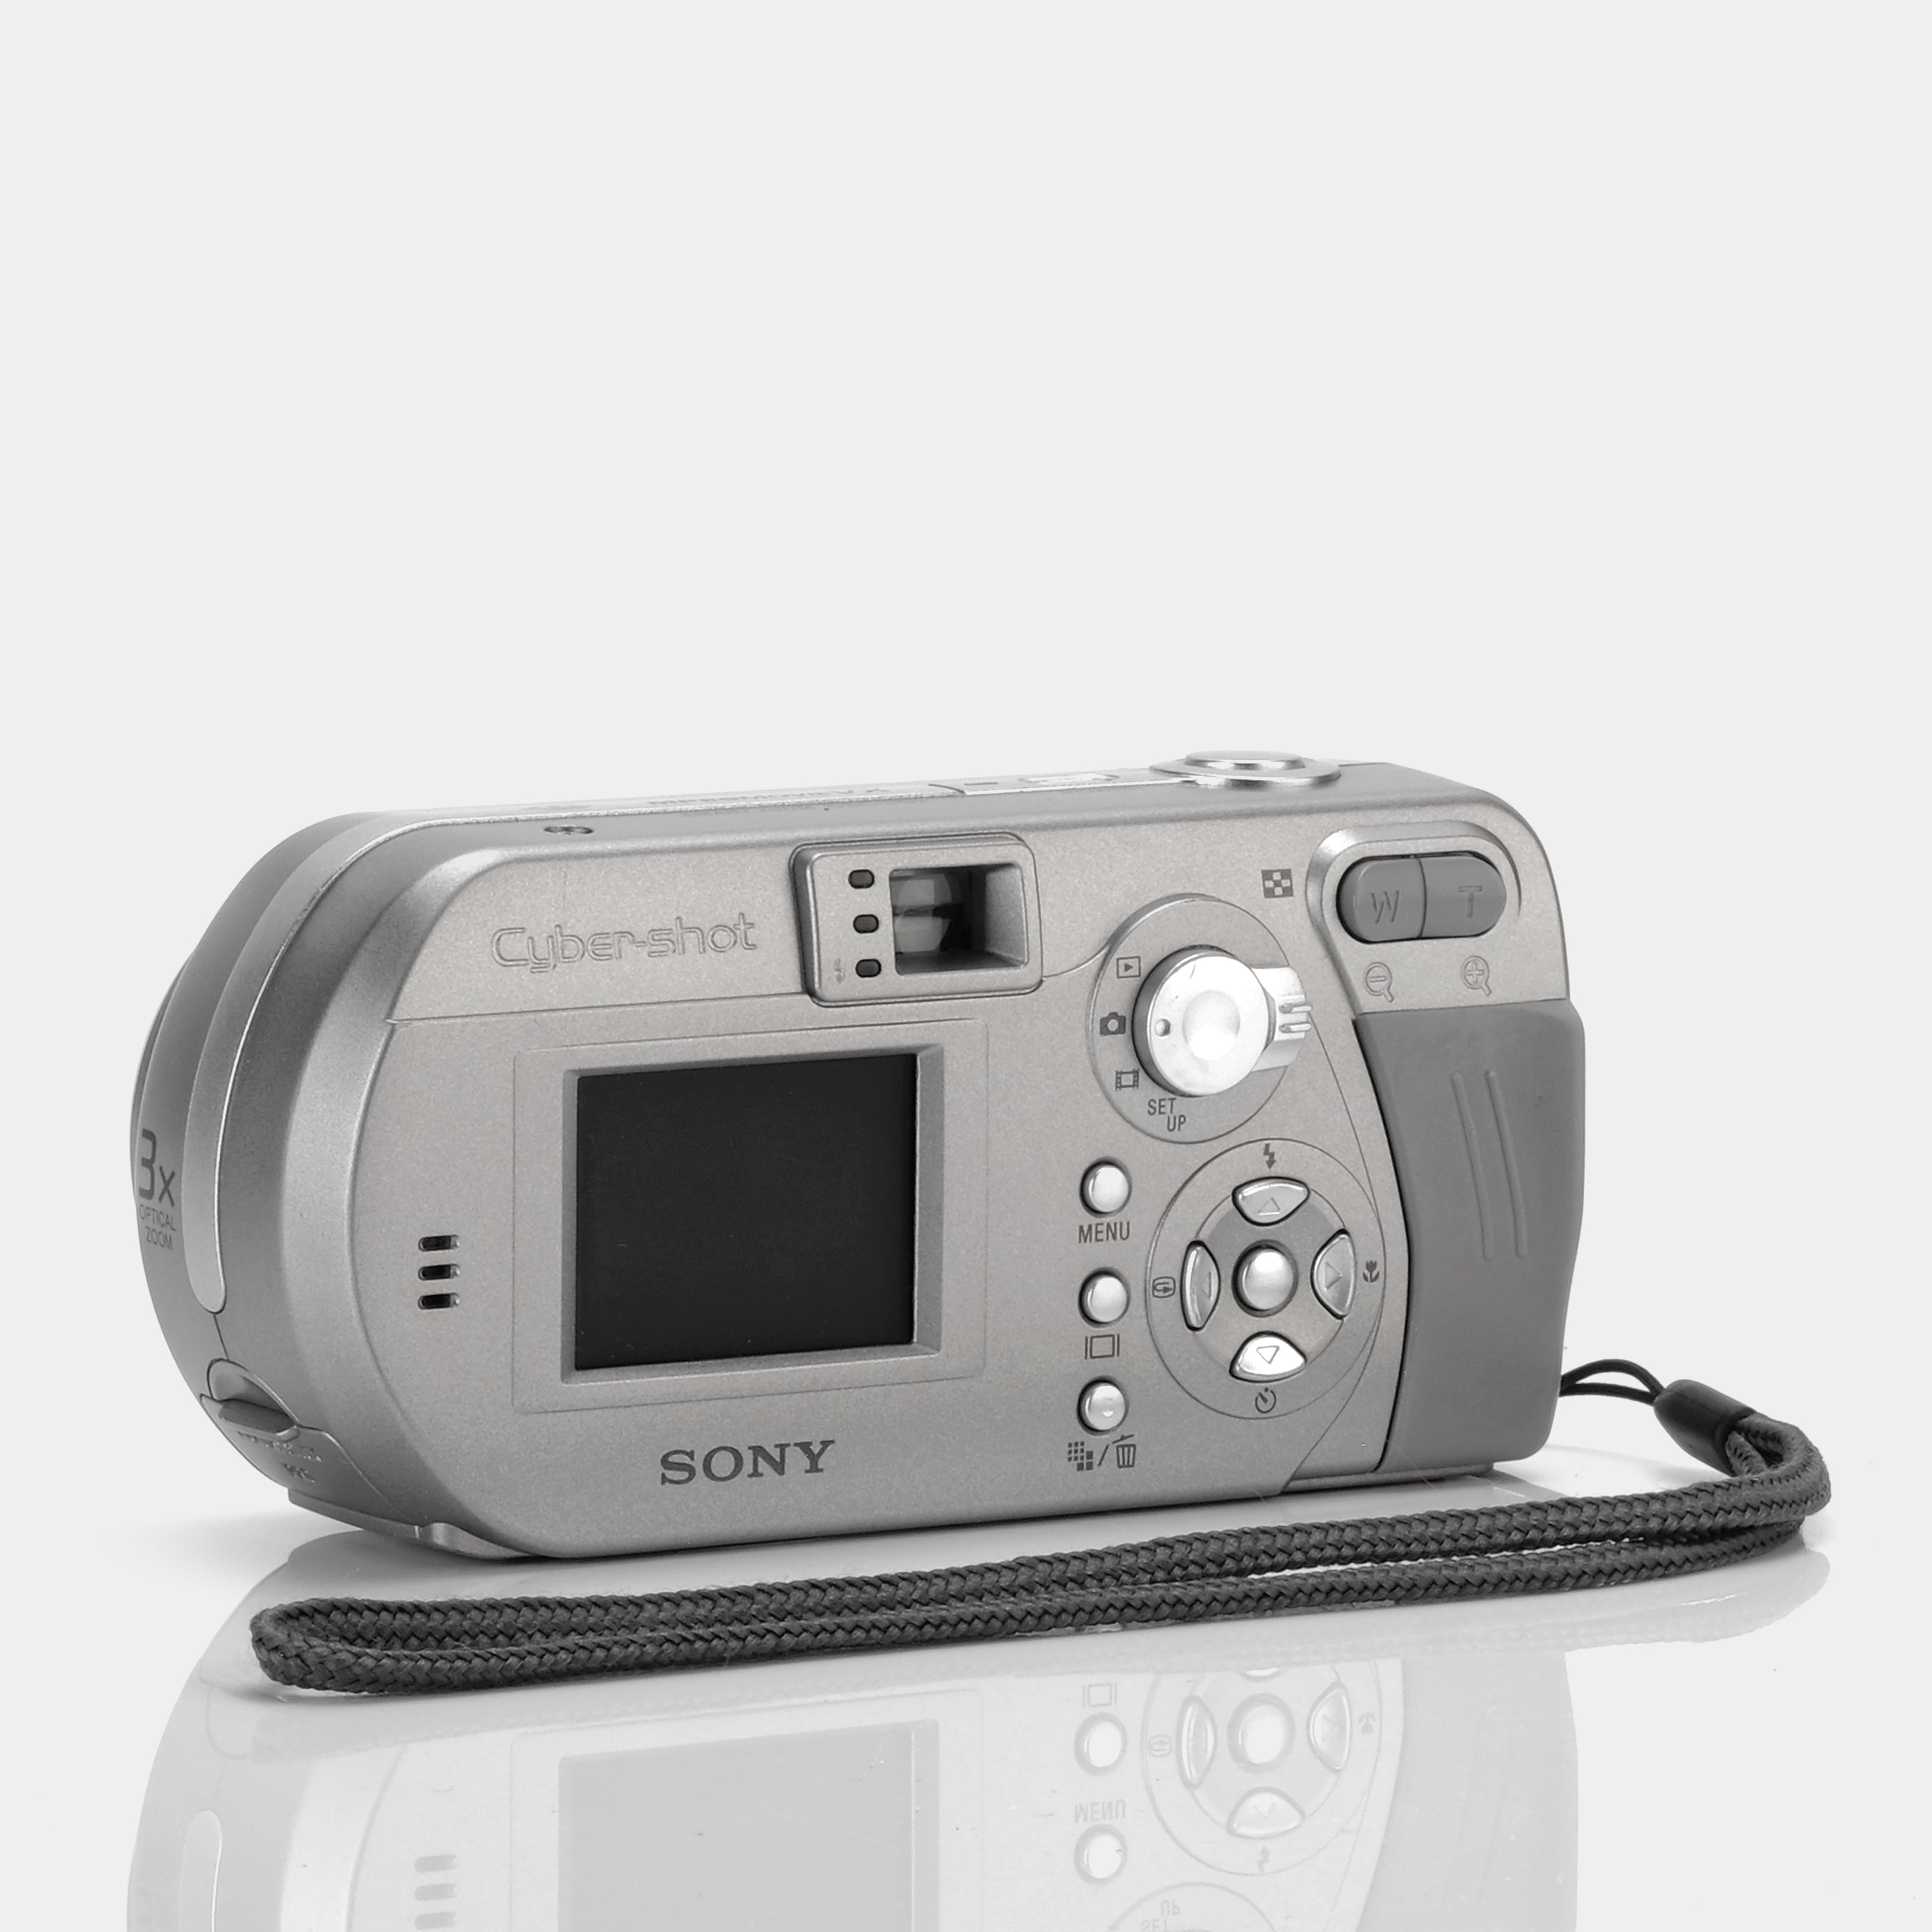 Sony Cámara digital DSCP92 Cyber-shot de 5MP con zoom óptico 3x